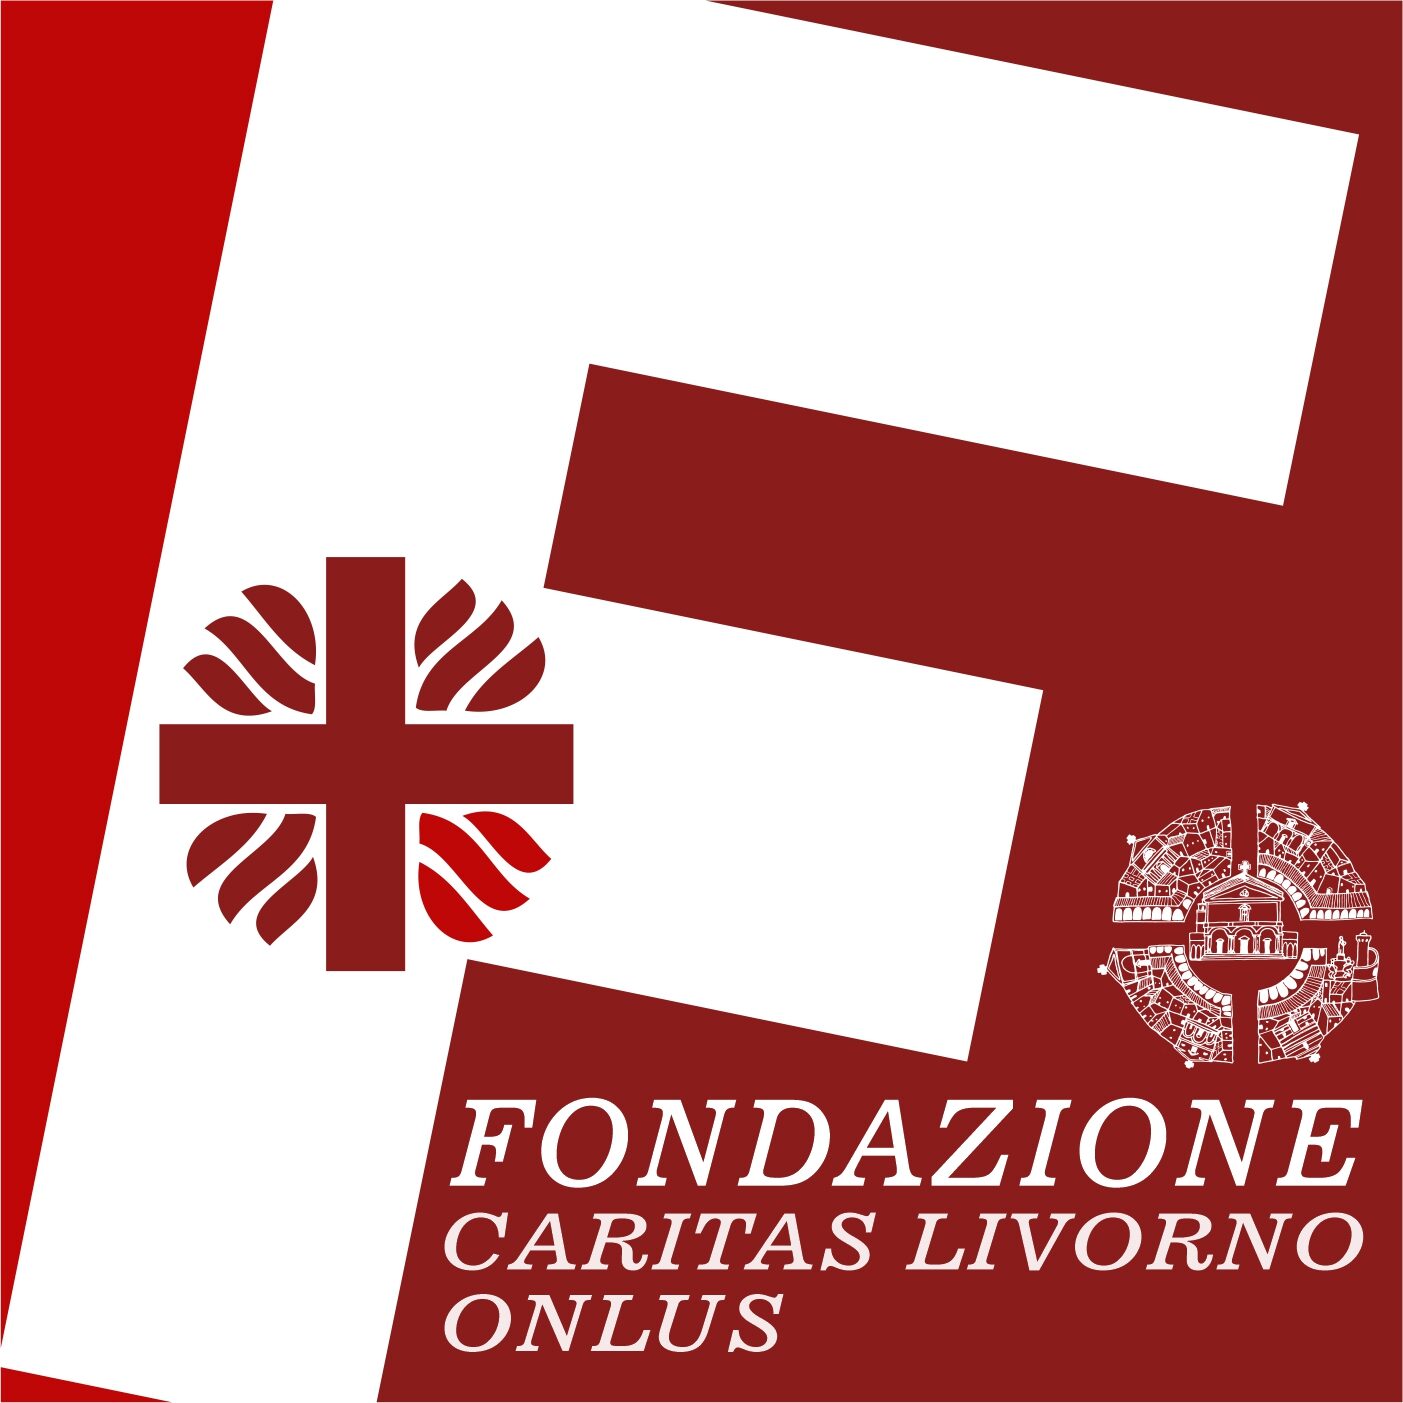 Fondazione Caritas Livorno